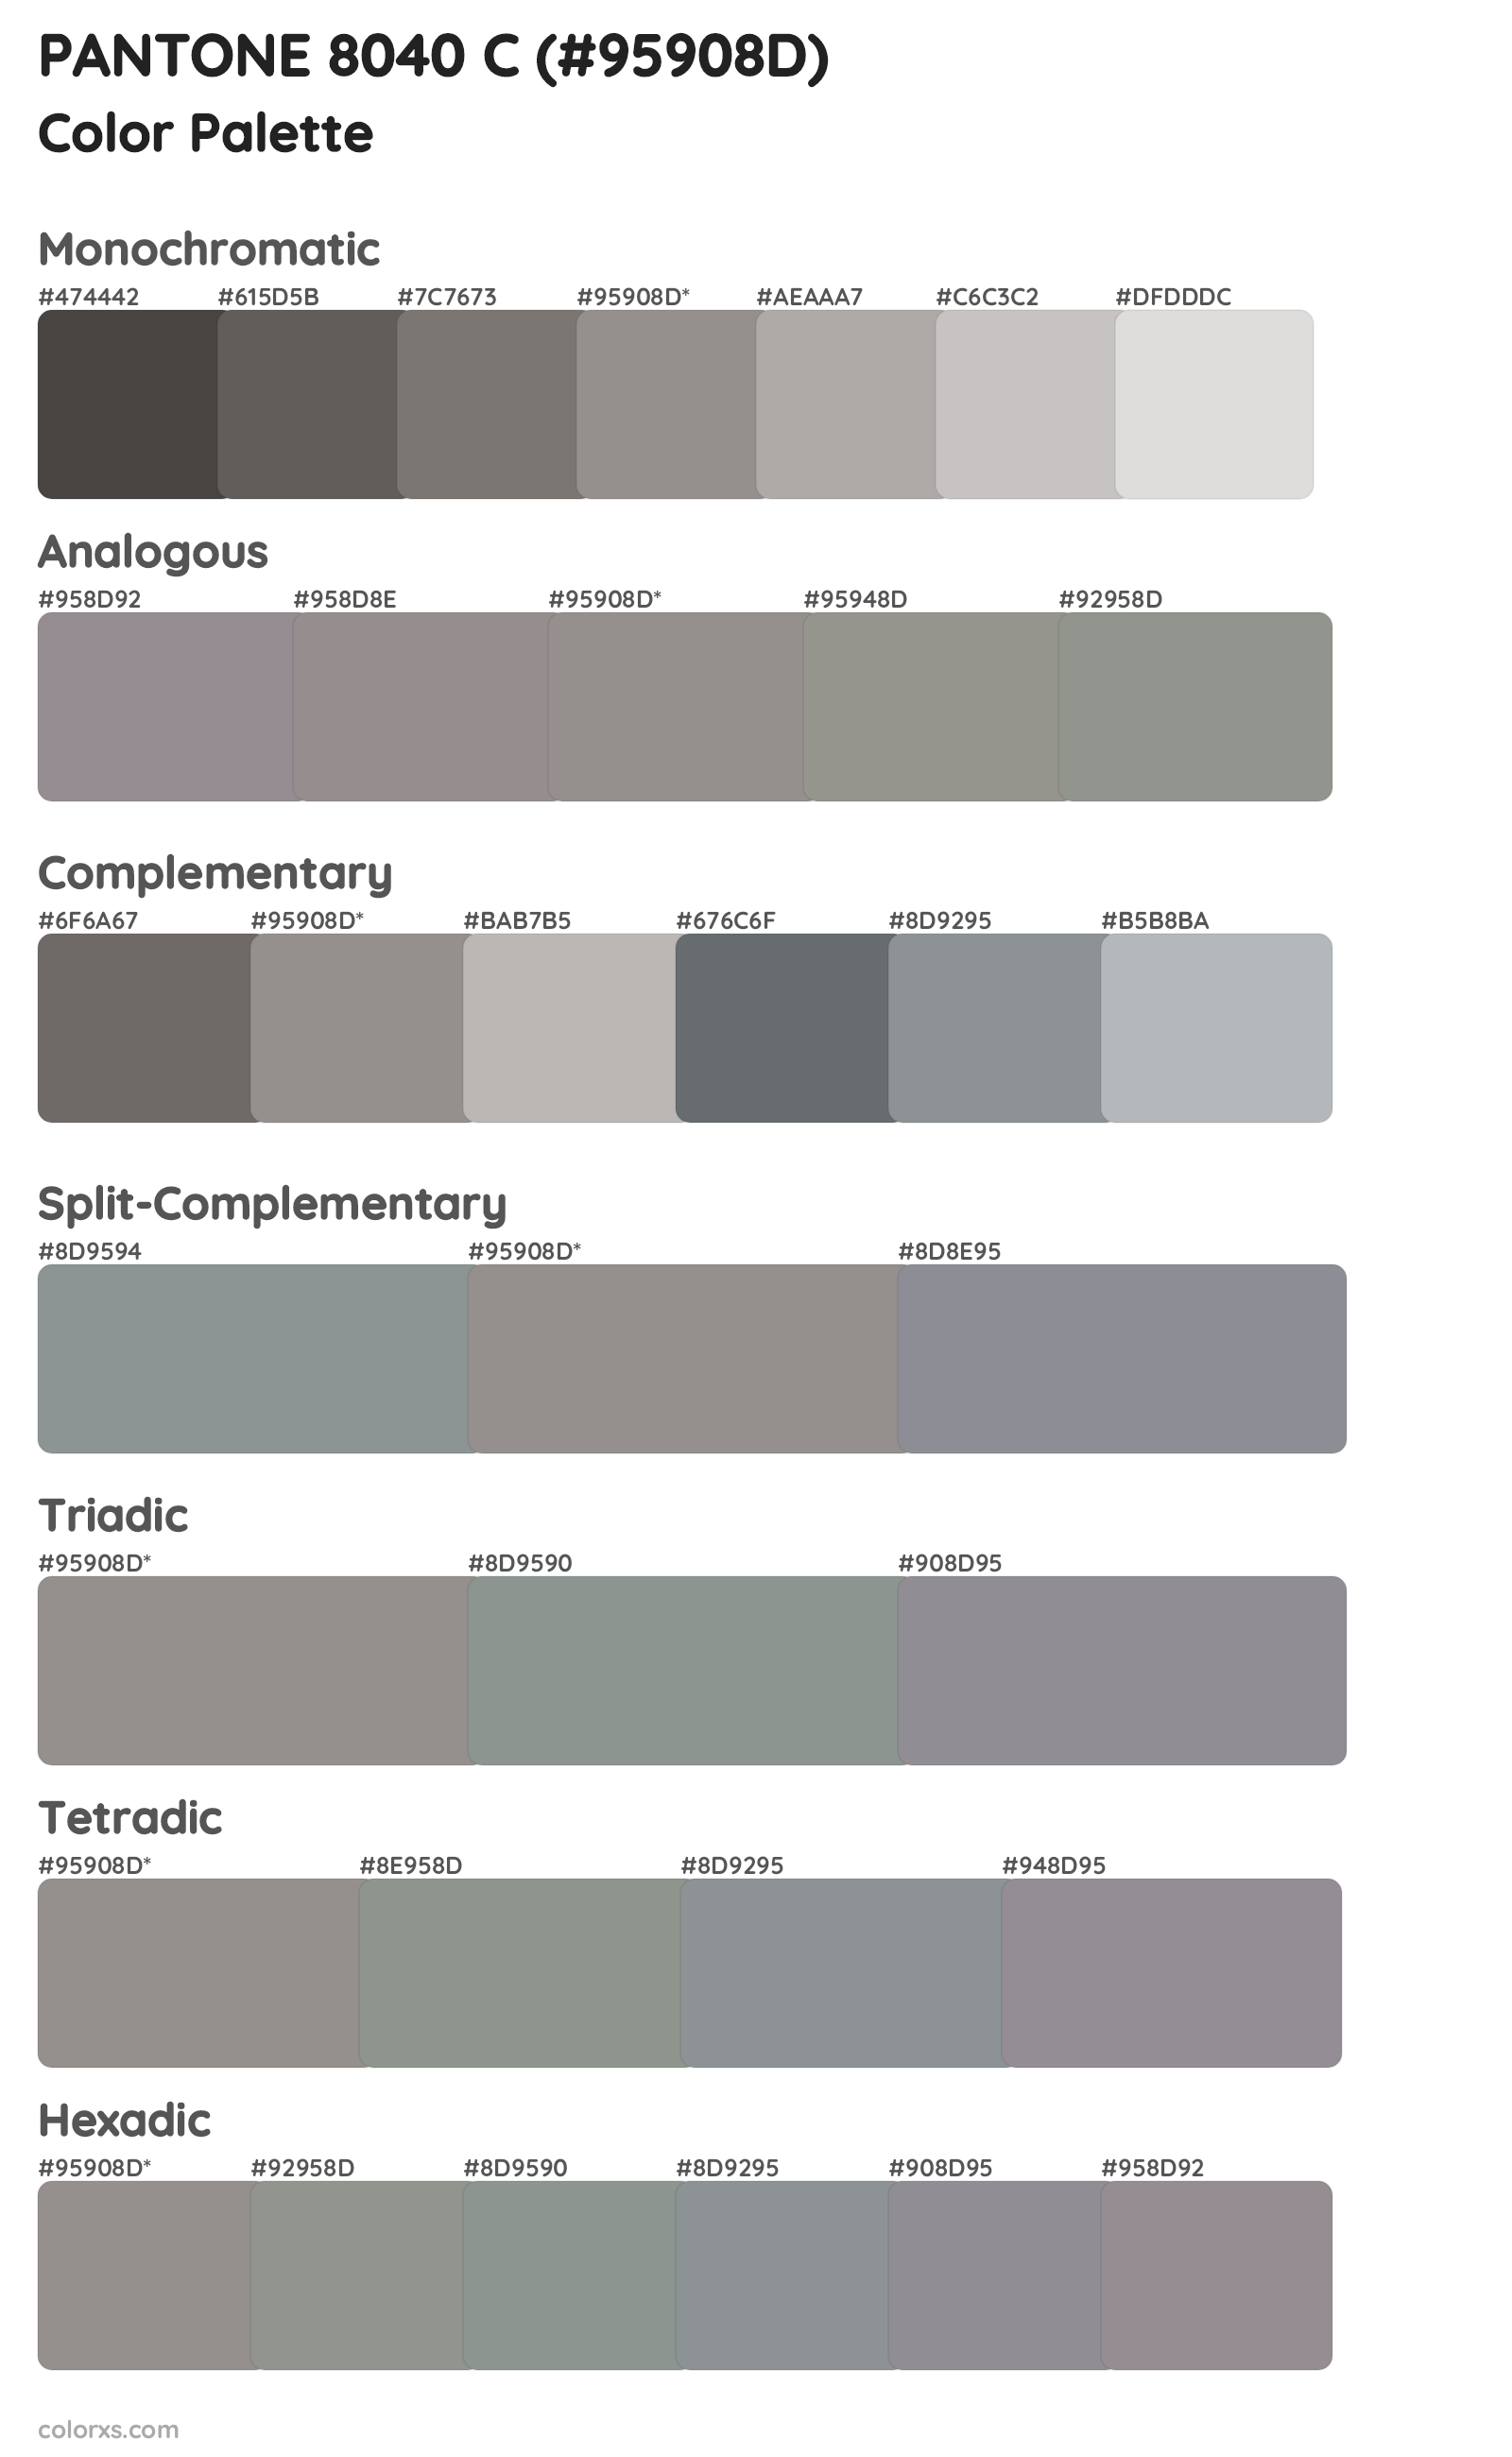 PANTONE 8040 C Color Scheme Palettes